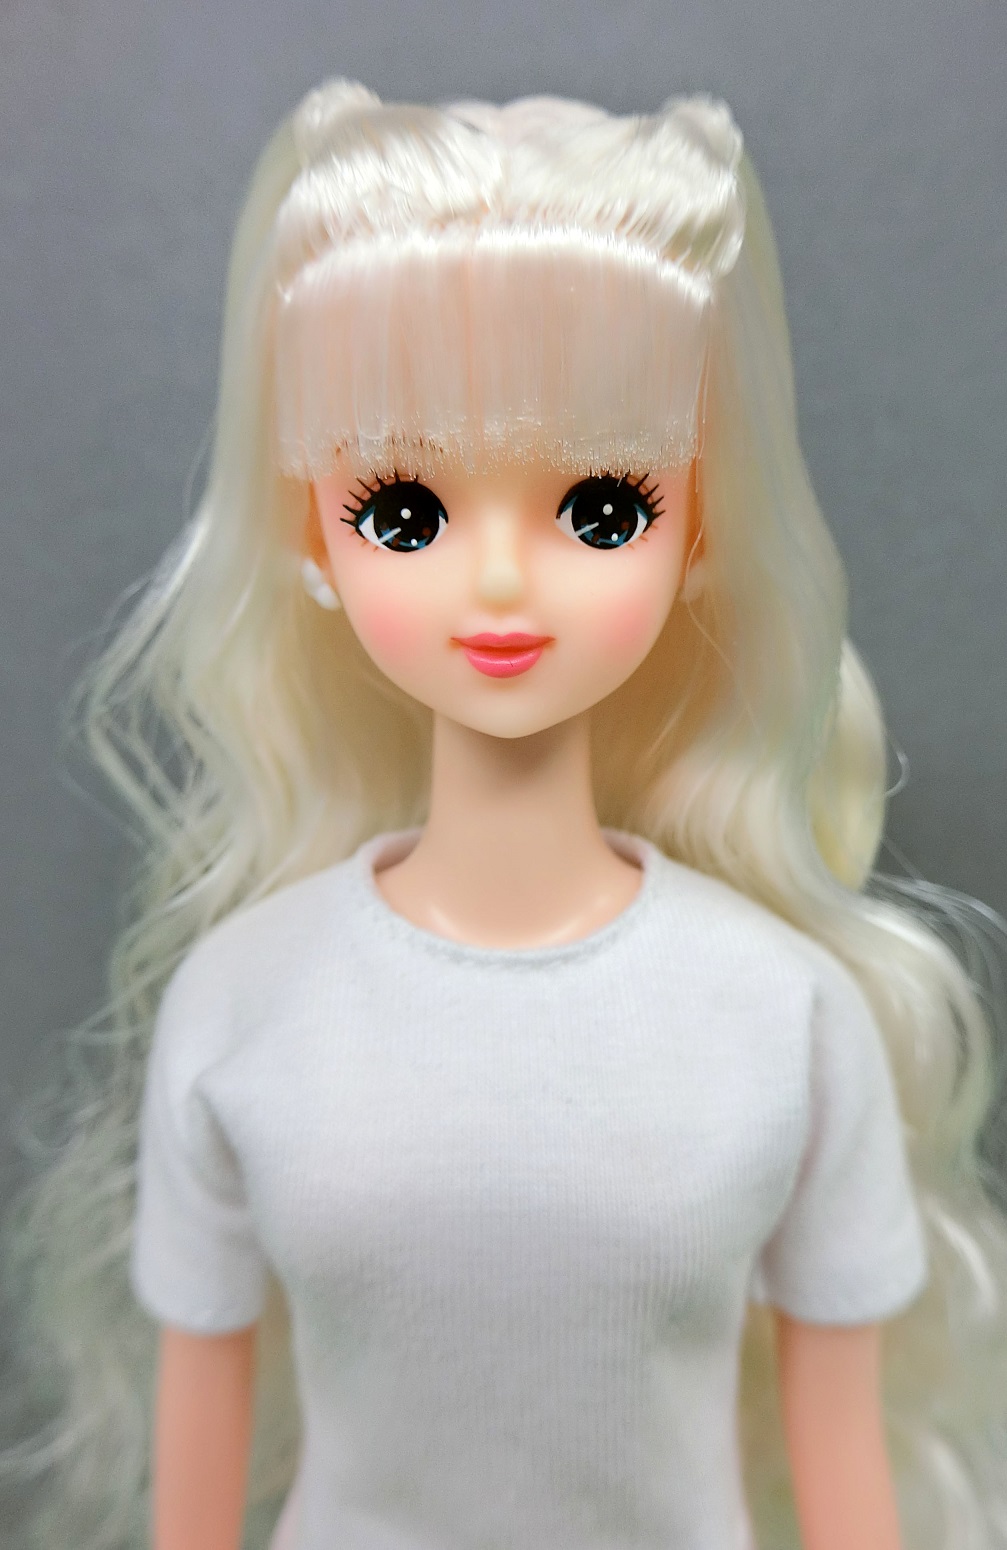 日本直販オンライン レア オリジナルドール プラスチックケース入り ジェニー他 リカちゃんキャッスル おもちゃ/人形